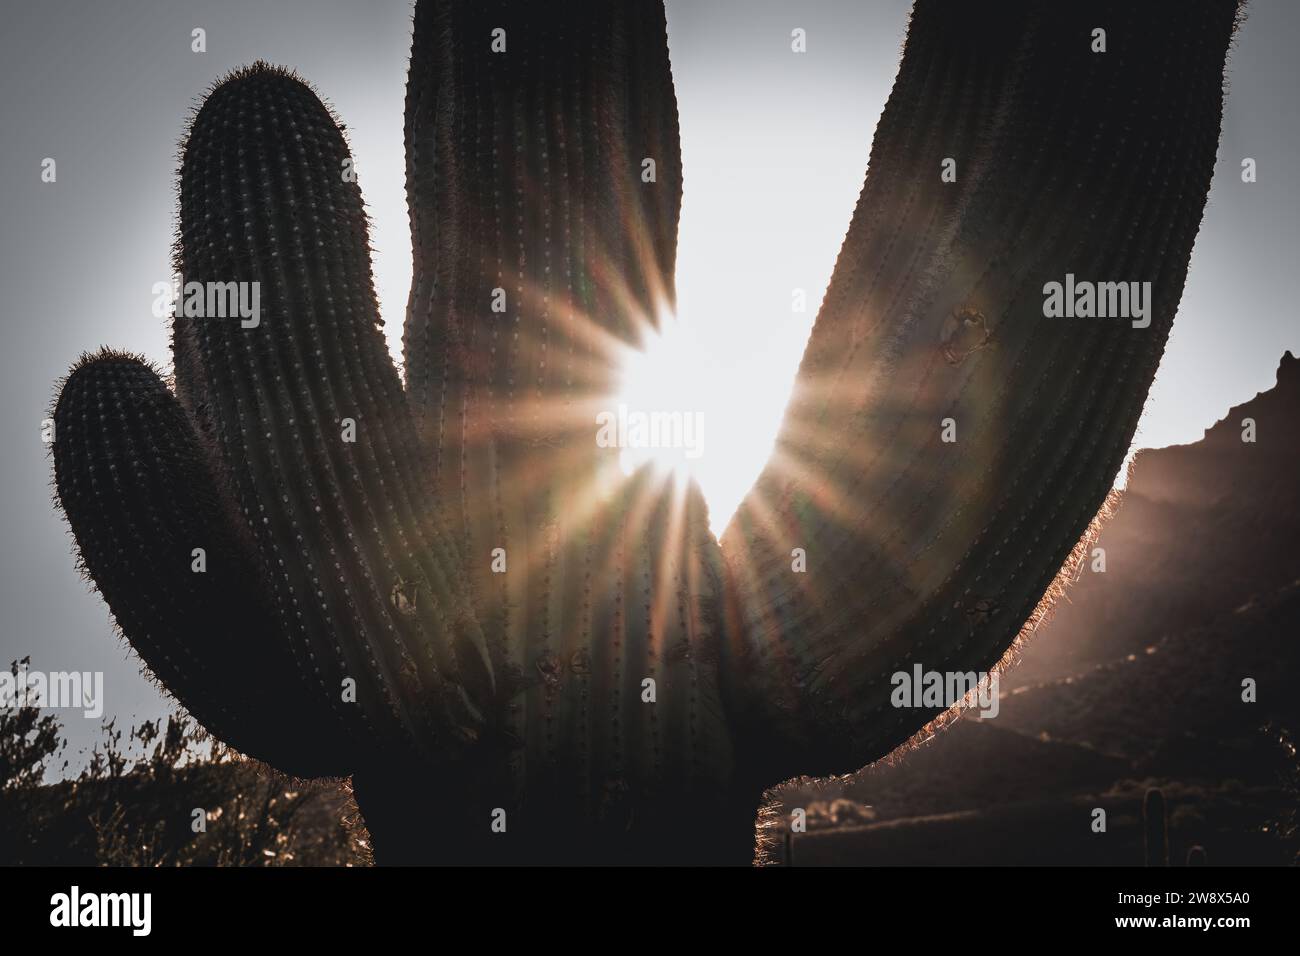 Deserto alba paesaggio saguaro cactus cactus cactus orsacchiotto Cholla nel Lost Dutchman Park Phoenix Arizona Cylindropuntia bigelovii - Carnegiea gigantea Foto Stock